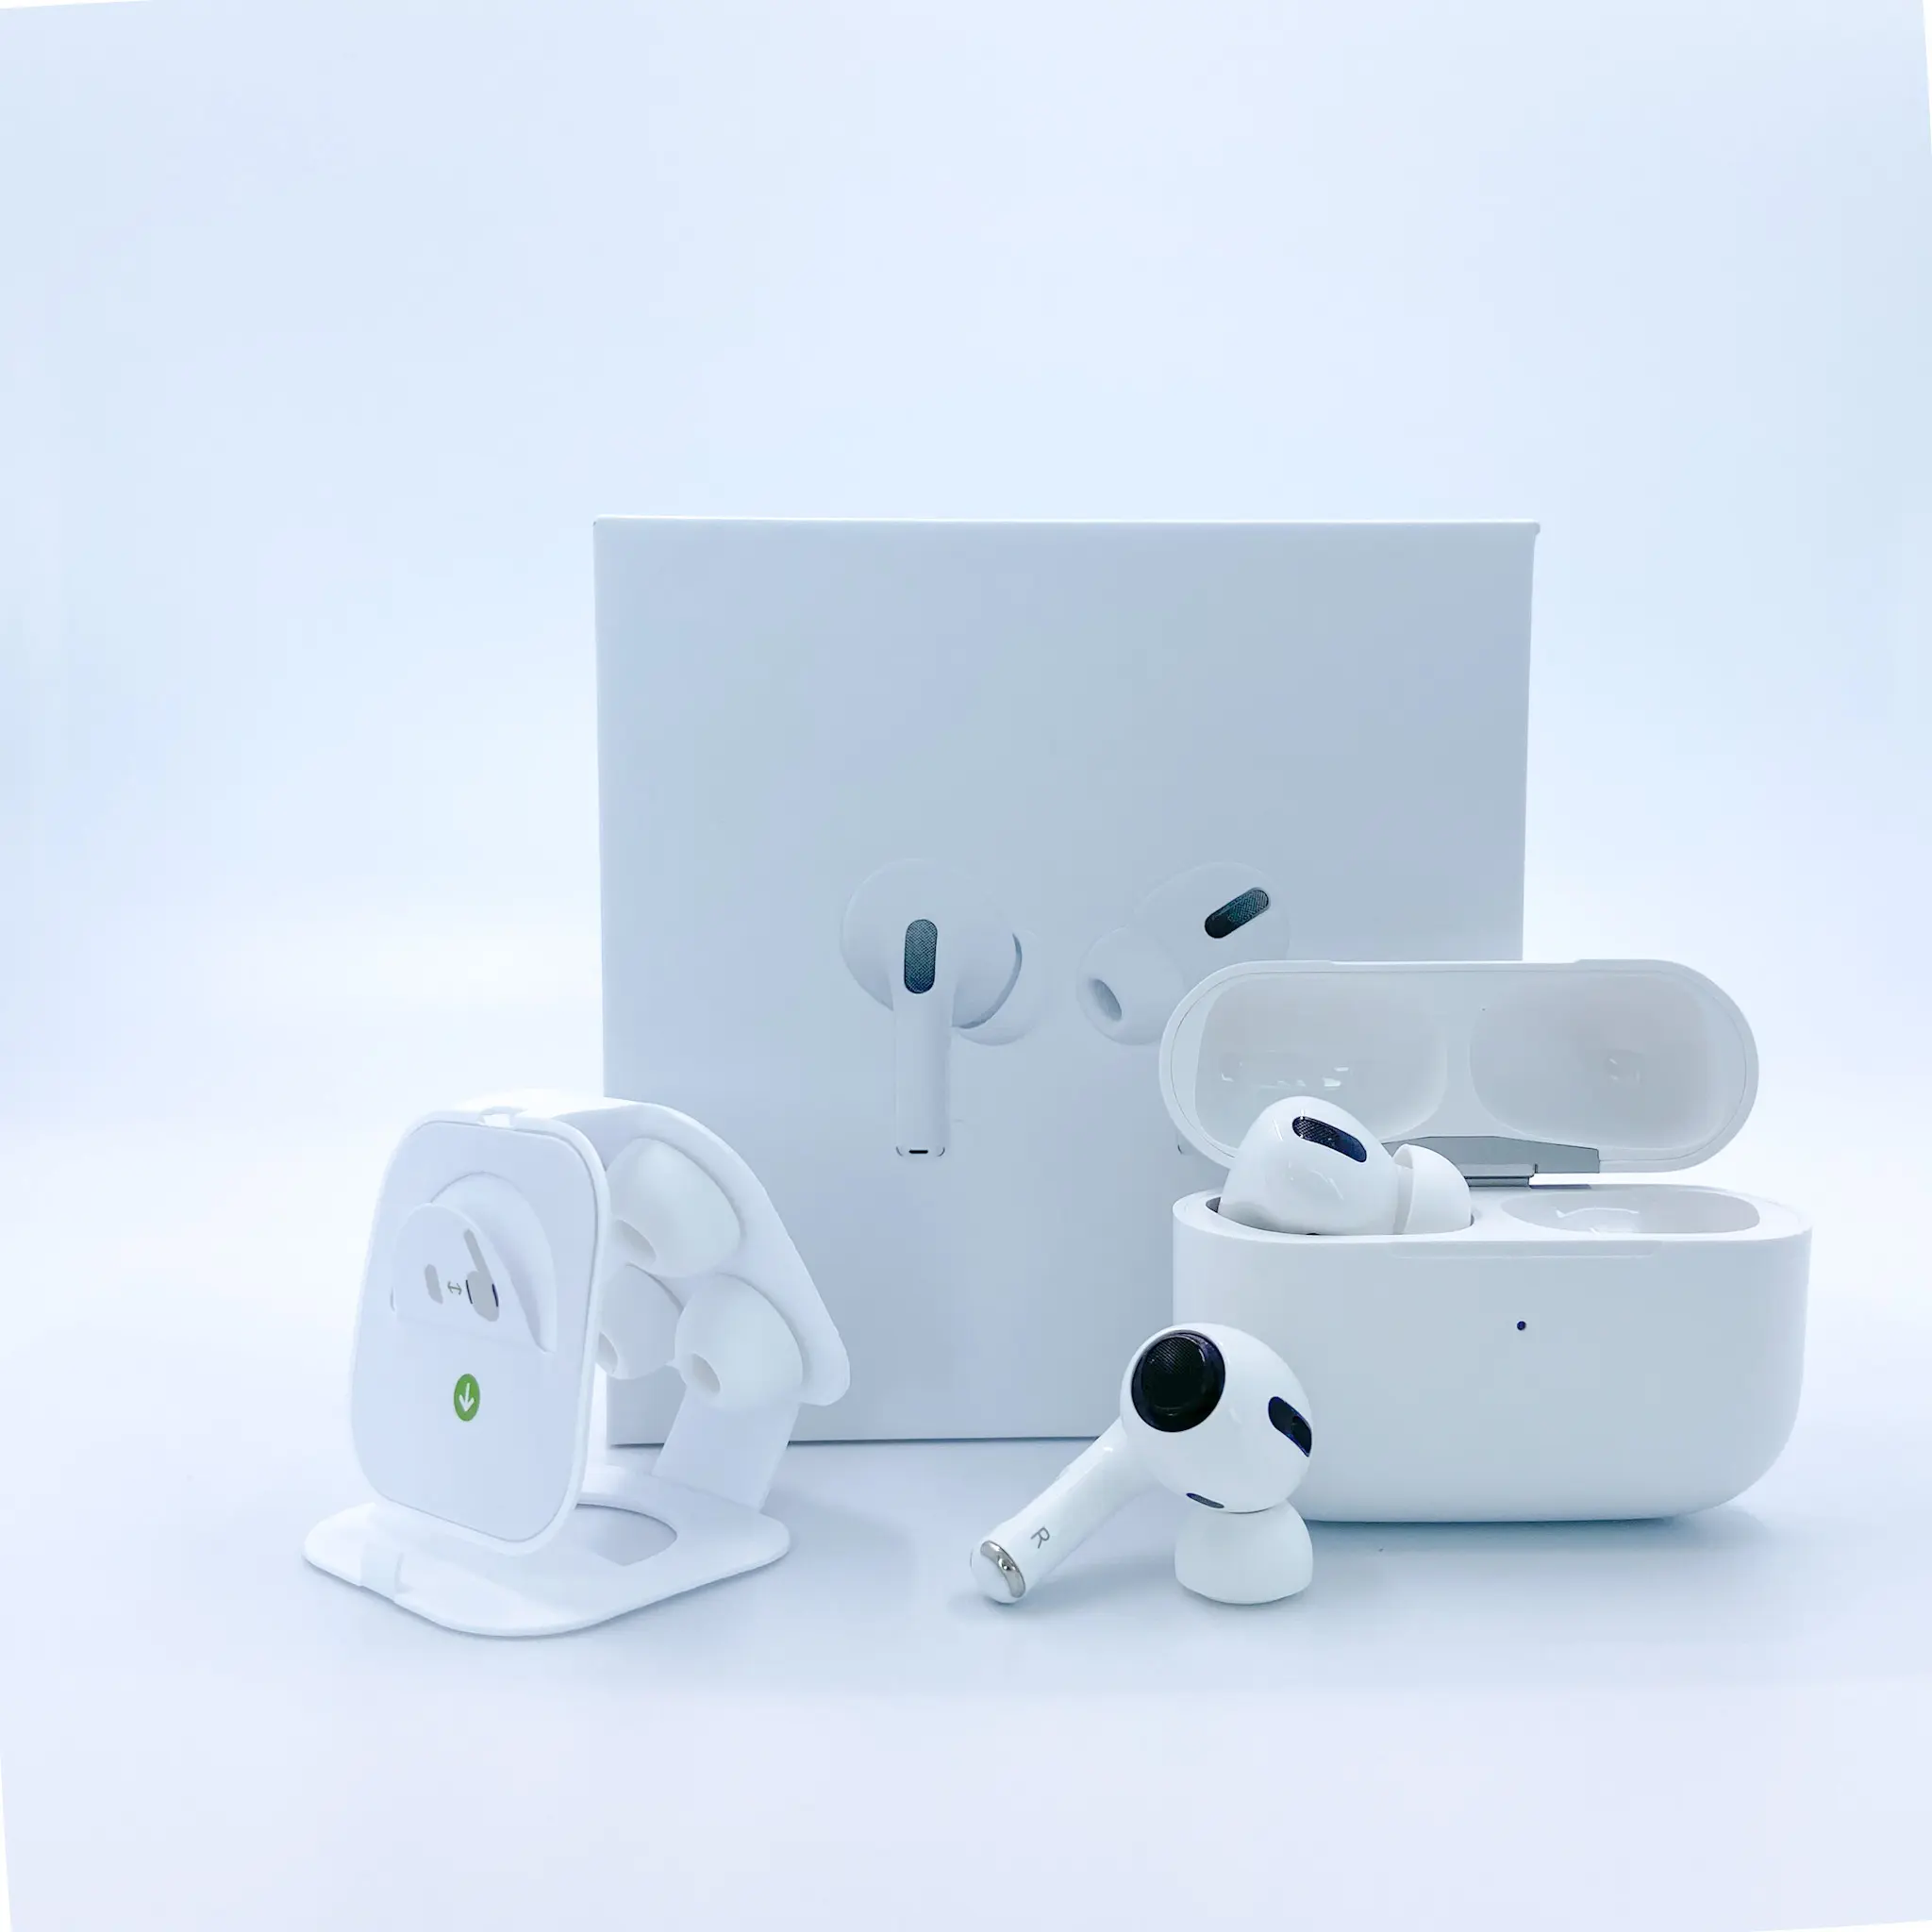 חדש למעלה איכות אפל AirPods פרו TWS אלחוטי אוזניות אוזניות אוזניות עבור AirPods פרו שיבוט 3 2